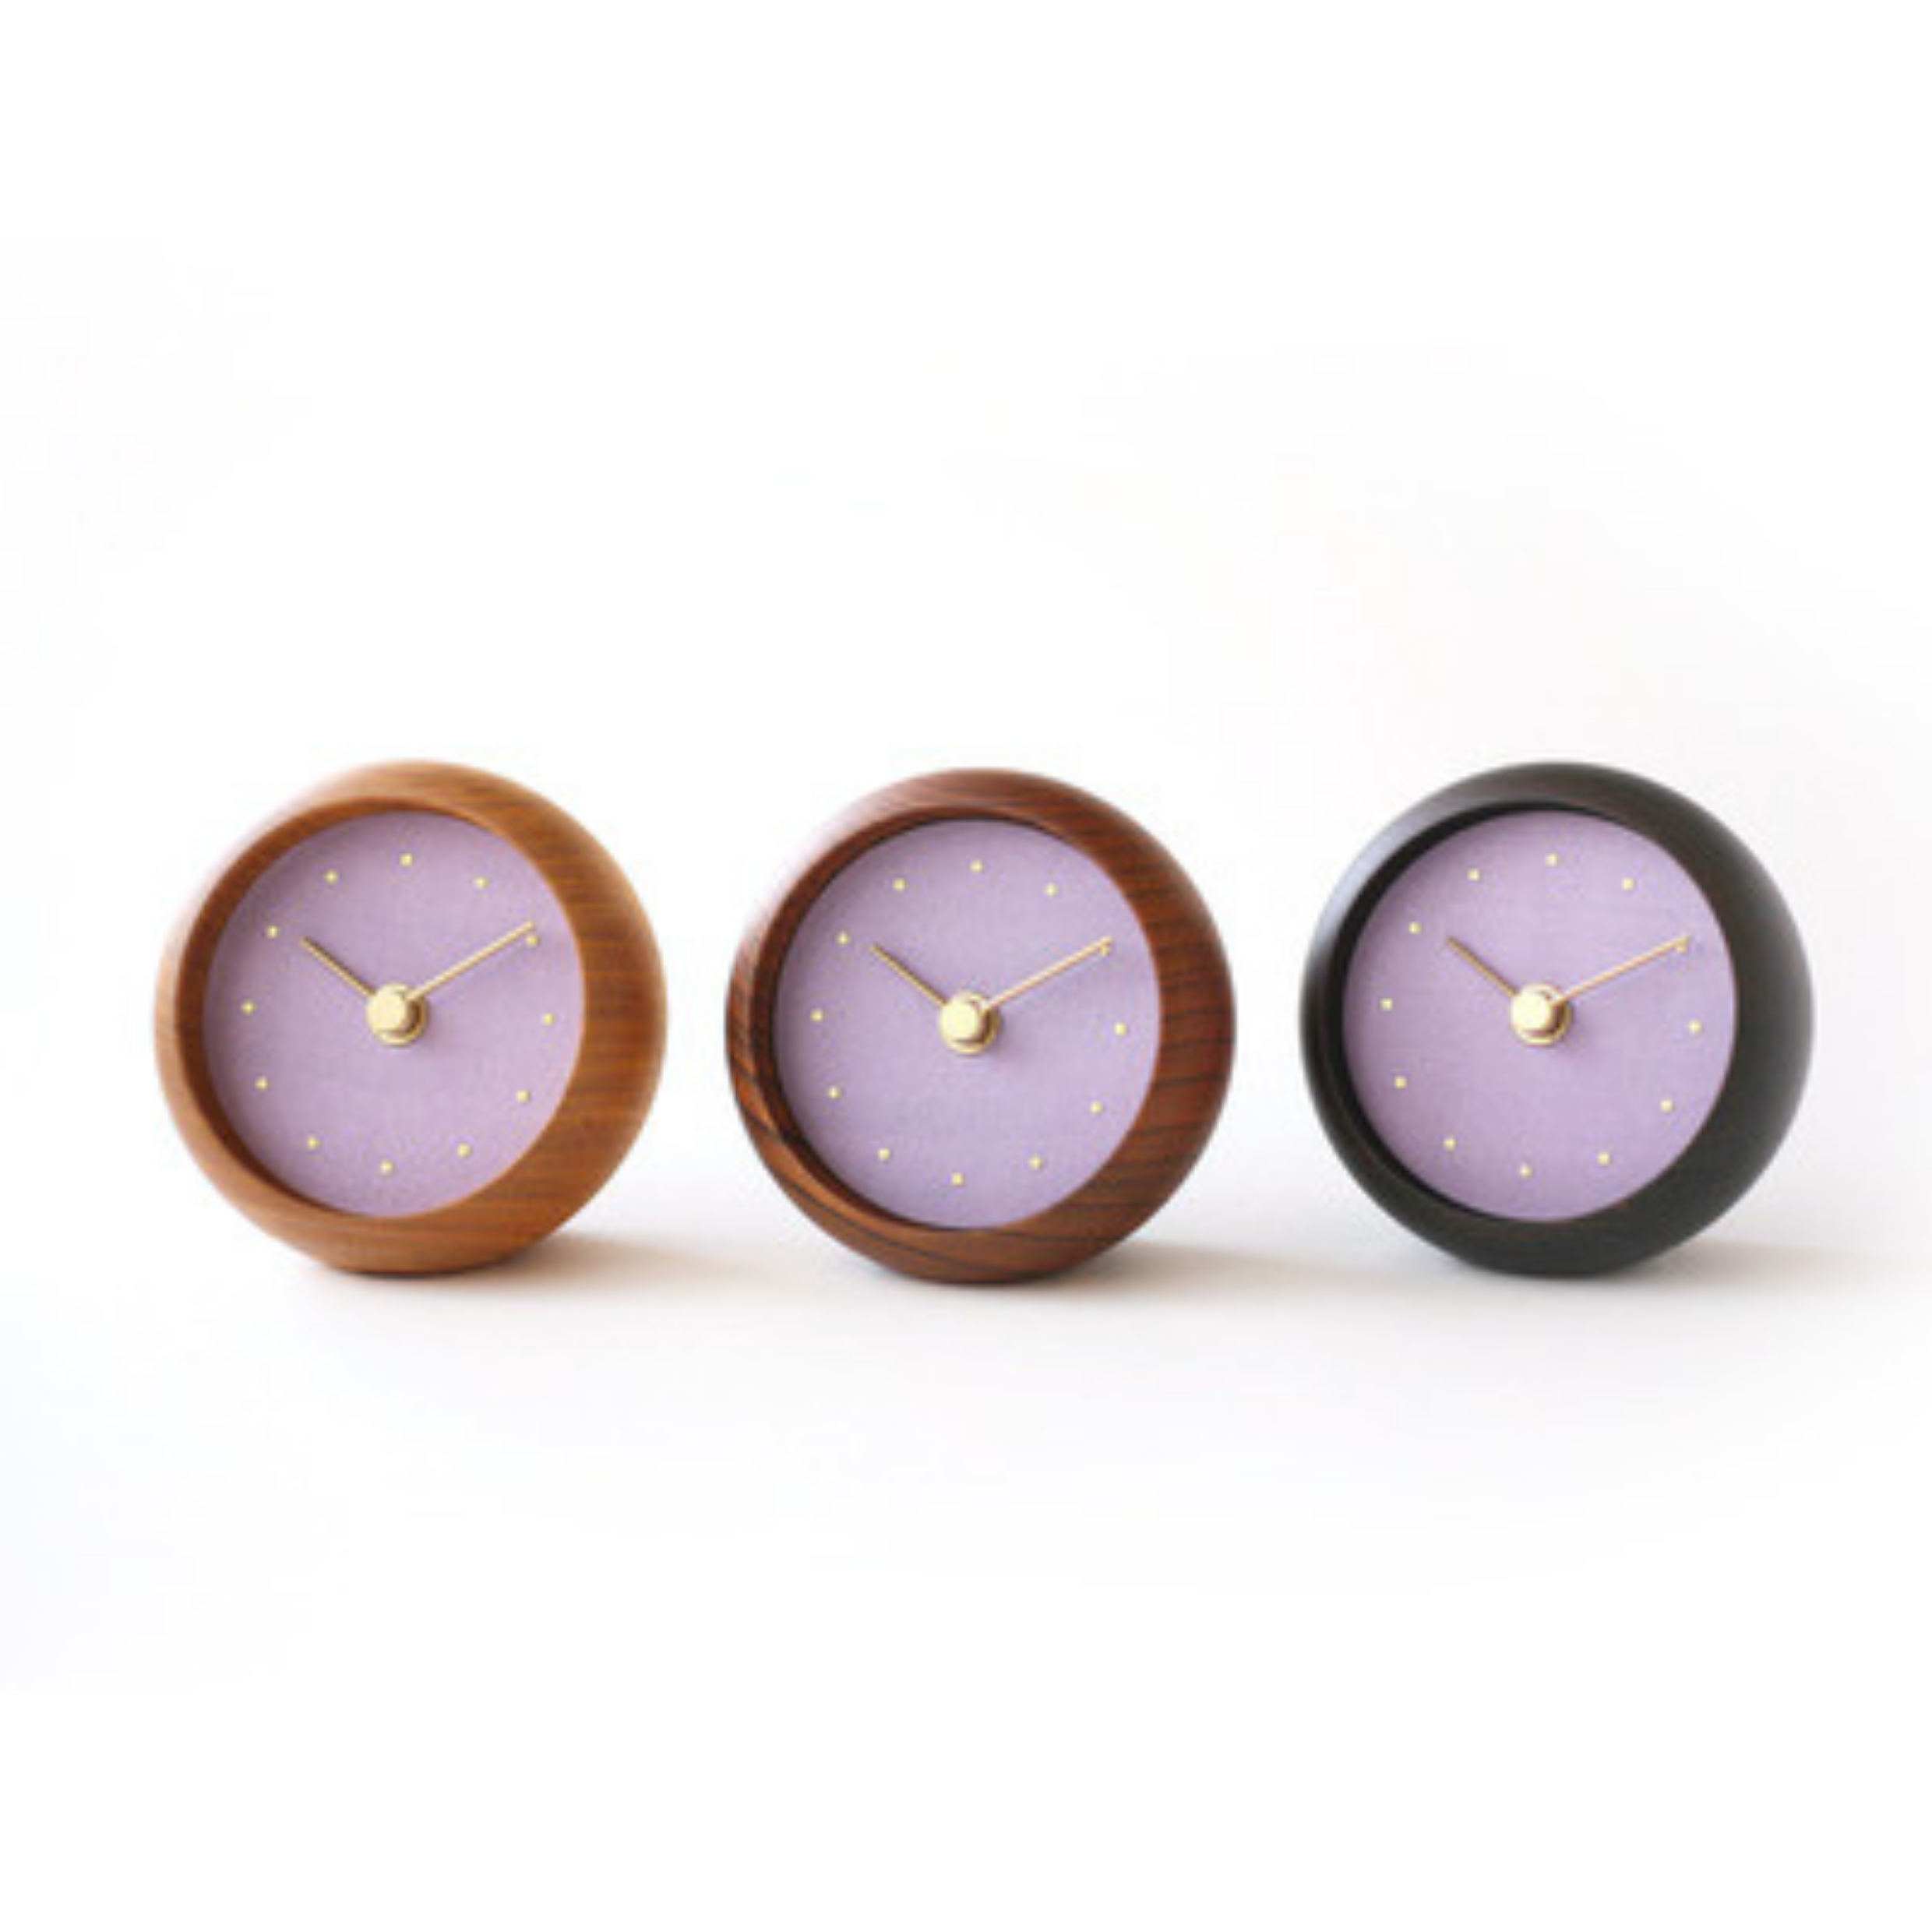 置時計 | こないろ | 藤紫 | 選べる木枠3種 | シーブレーン